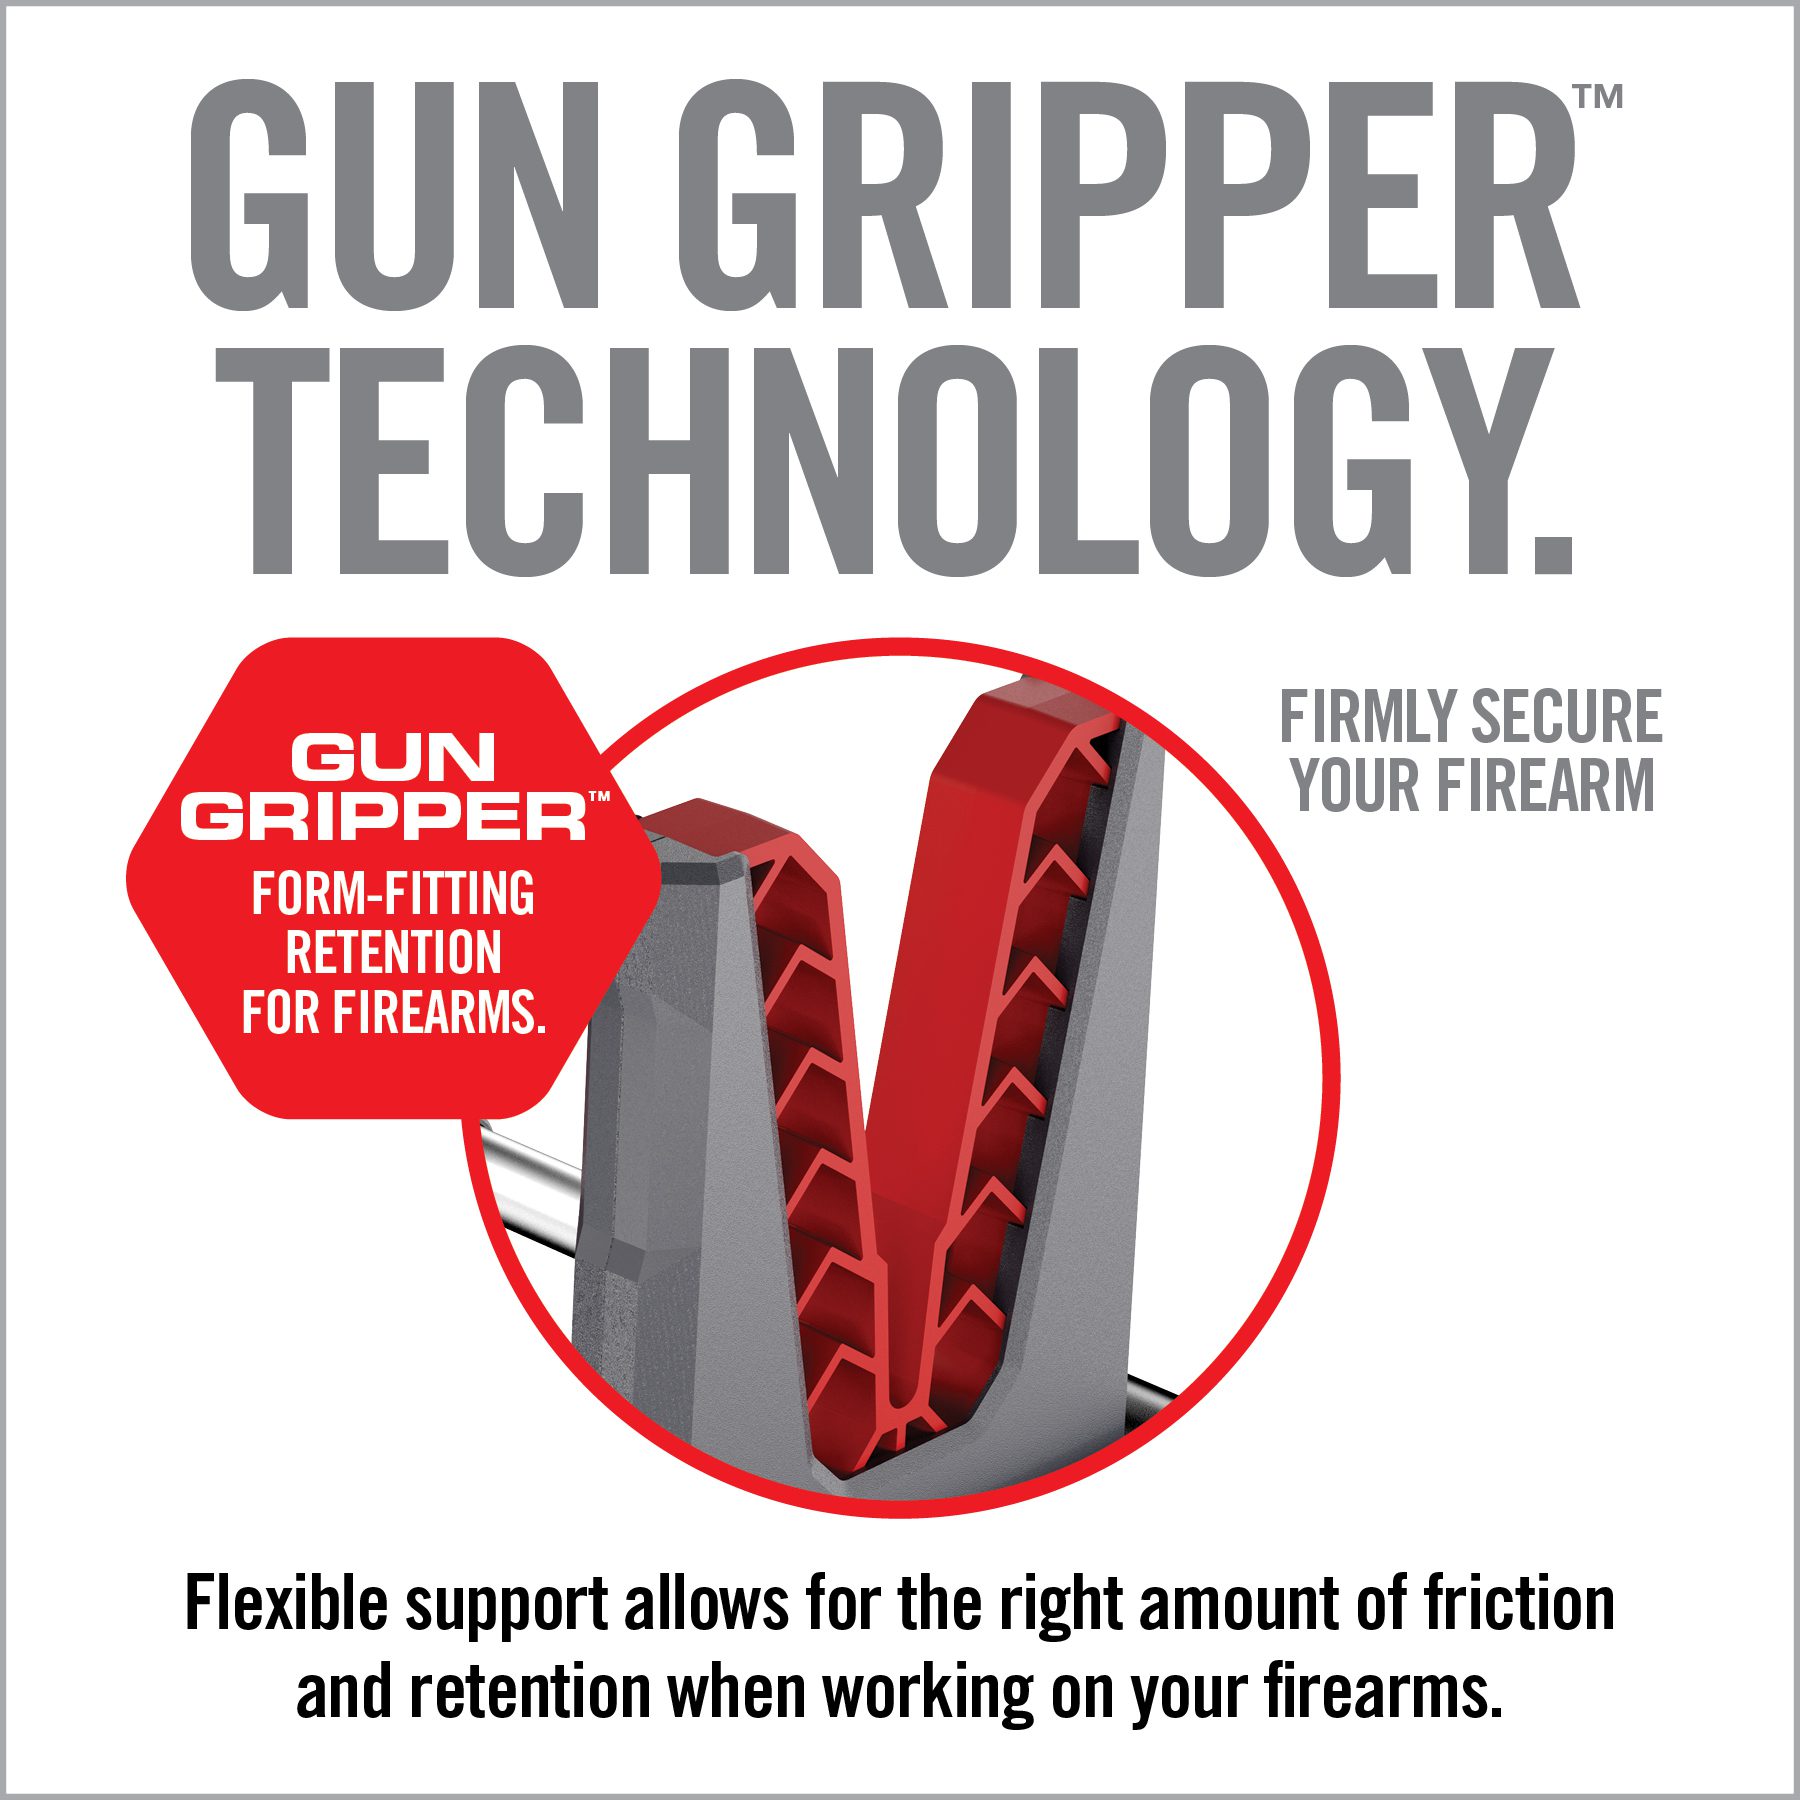 the gun gripper technology flyer